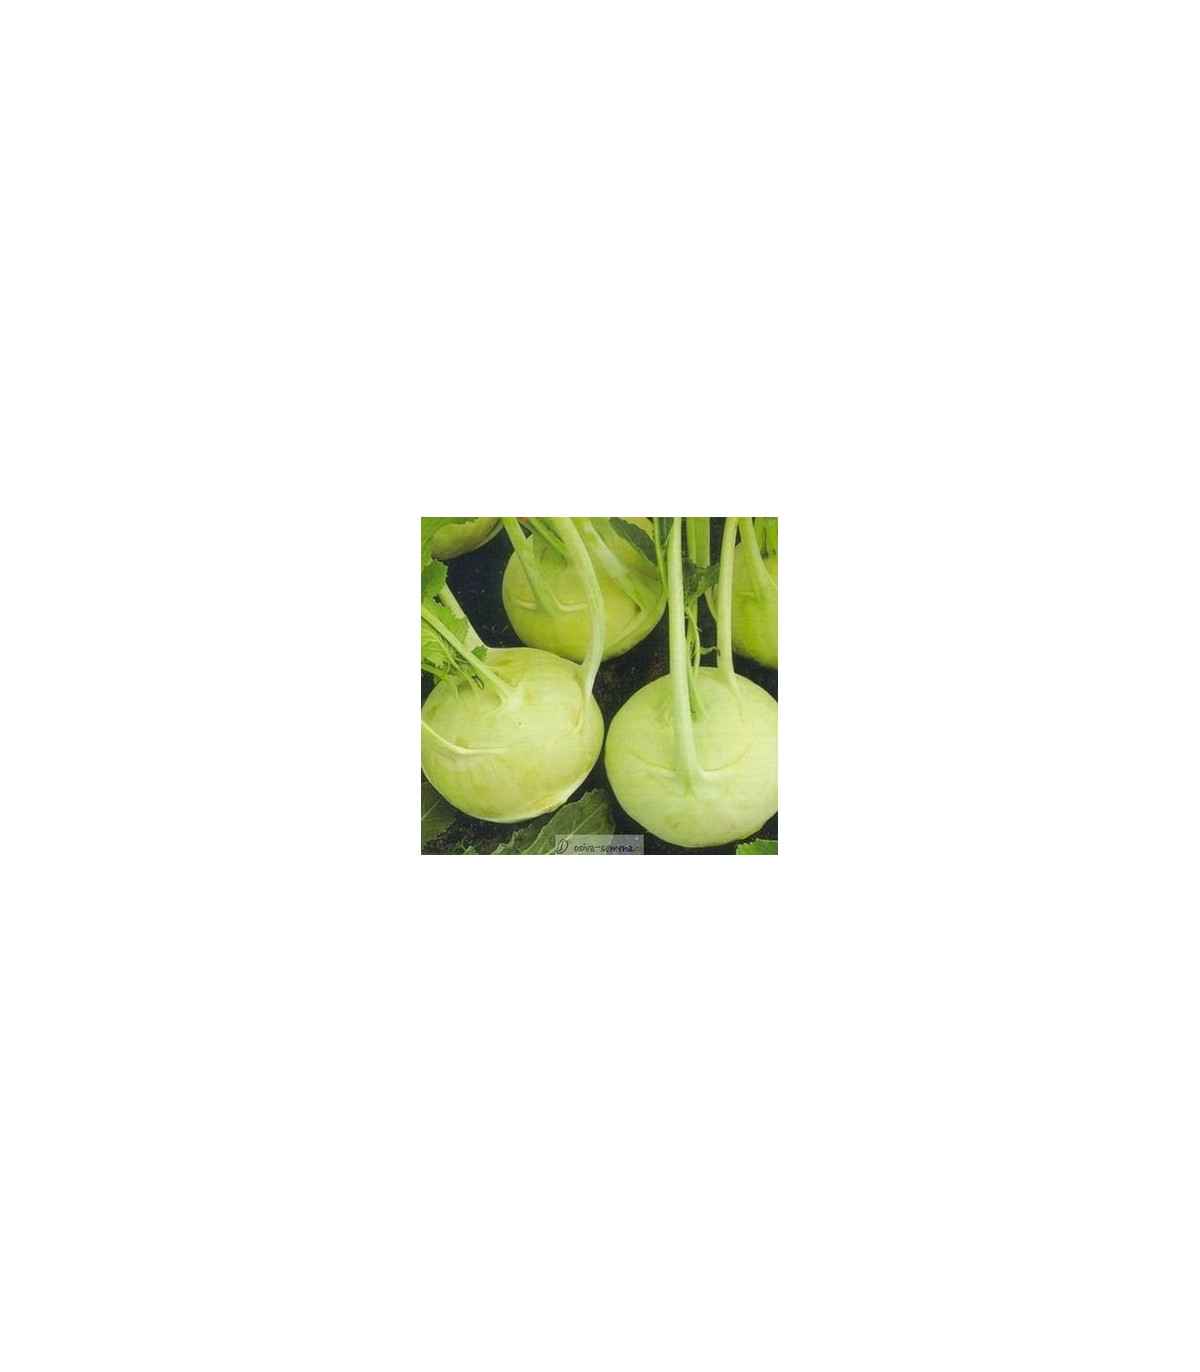 Kaleráb extra jemný - rastlina Brassica oleracea - predaj semien kalerábov - 50 ks